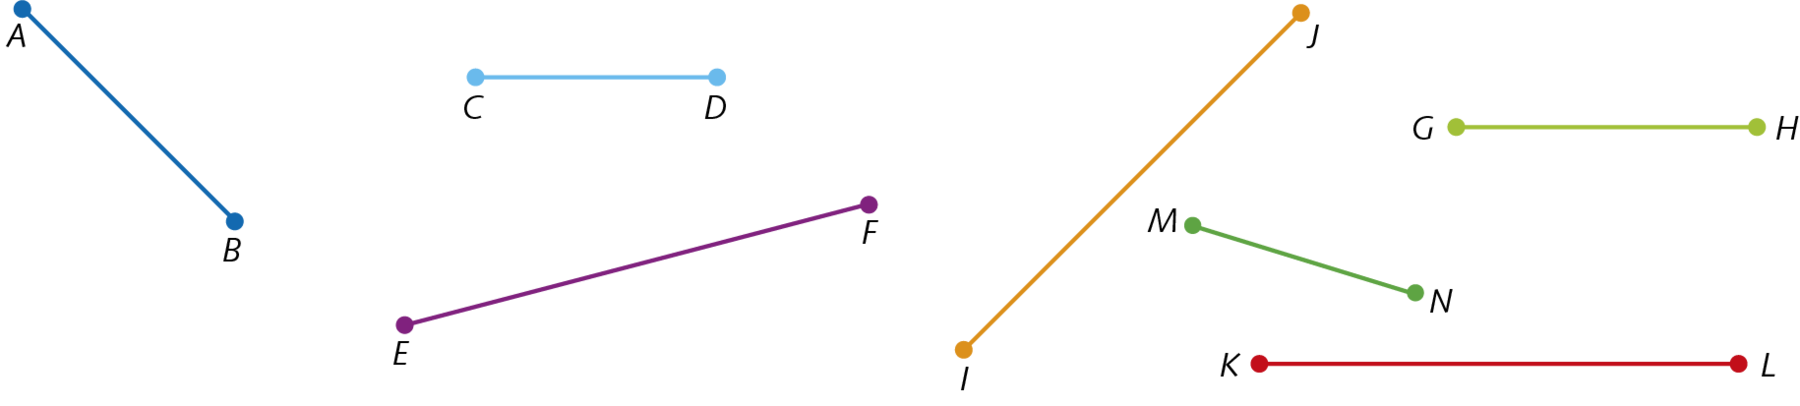 Figuras geométricas. Representação de 7 segmentos de reta em diferentes posições. Da esquerda para direita. Segmento de reta azul escuro A e B, inclinado, ponto A acima do ponto B. Segmento de reta azul claro C e D, na horizontal. Segmento de reta roxo E e F, inclinado, ponto E abaixo do ponto F. Segmento de reta laranja I e J, inclinado, ponto I abaixo do ponto J. Segmento de reta verde escuro M e N, inclinado, M acima do N. Segmento de reta verde claro G e H, na horizontal. Segmento de reta vermelho K e L, na horizontal.